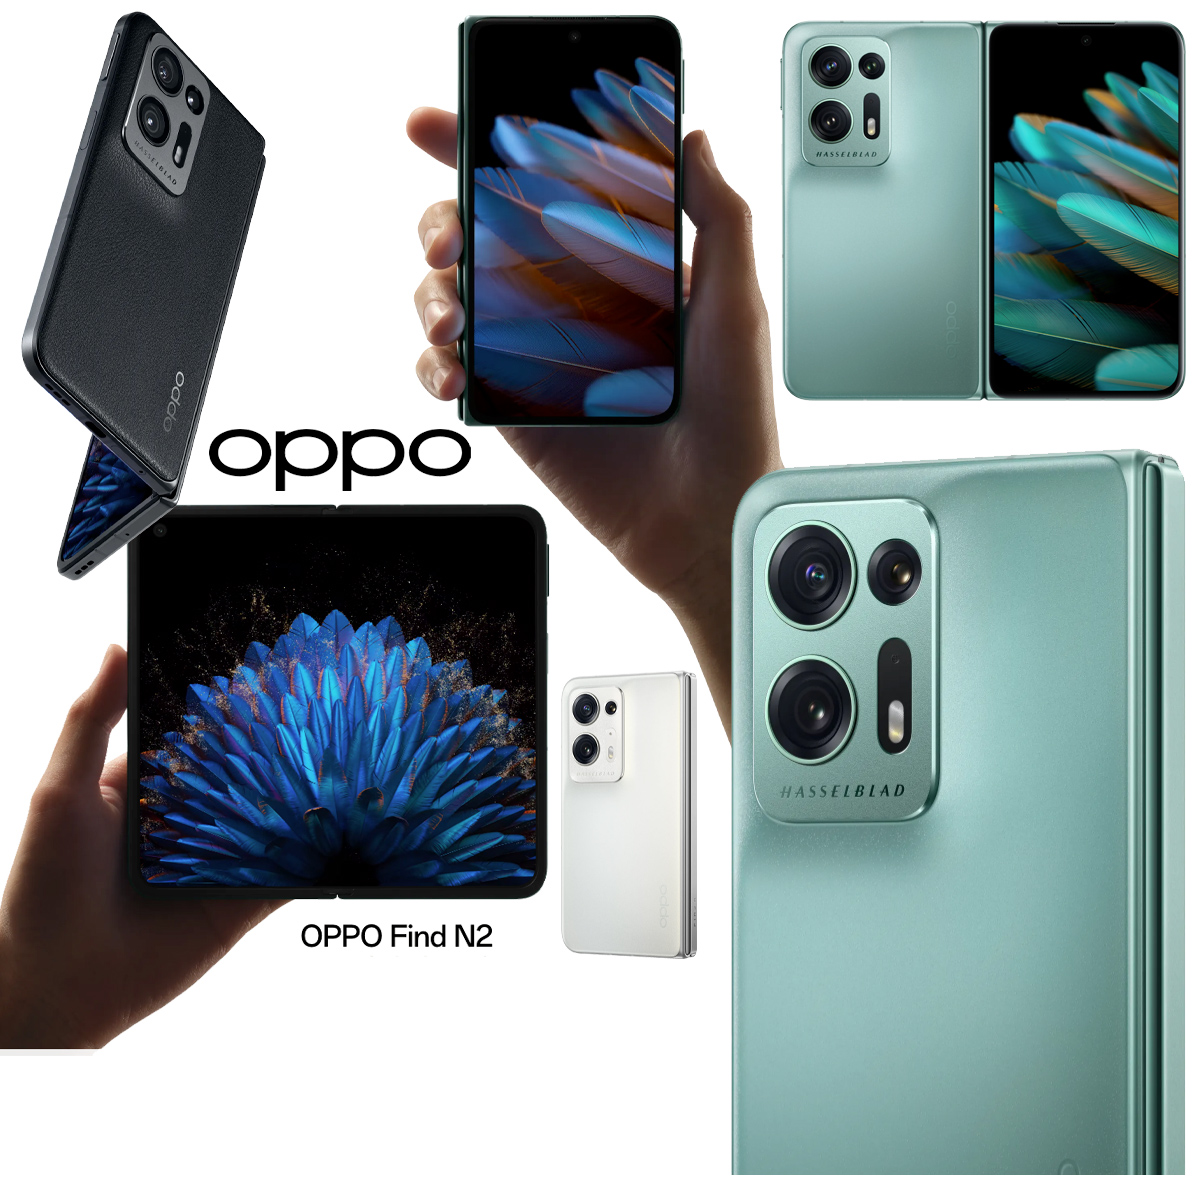 Novos smartphones dobráveis da Oppo: Find N2 e Find N2 Flip